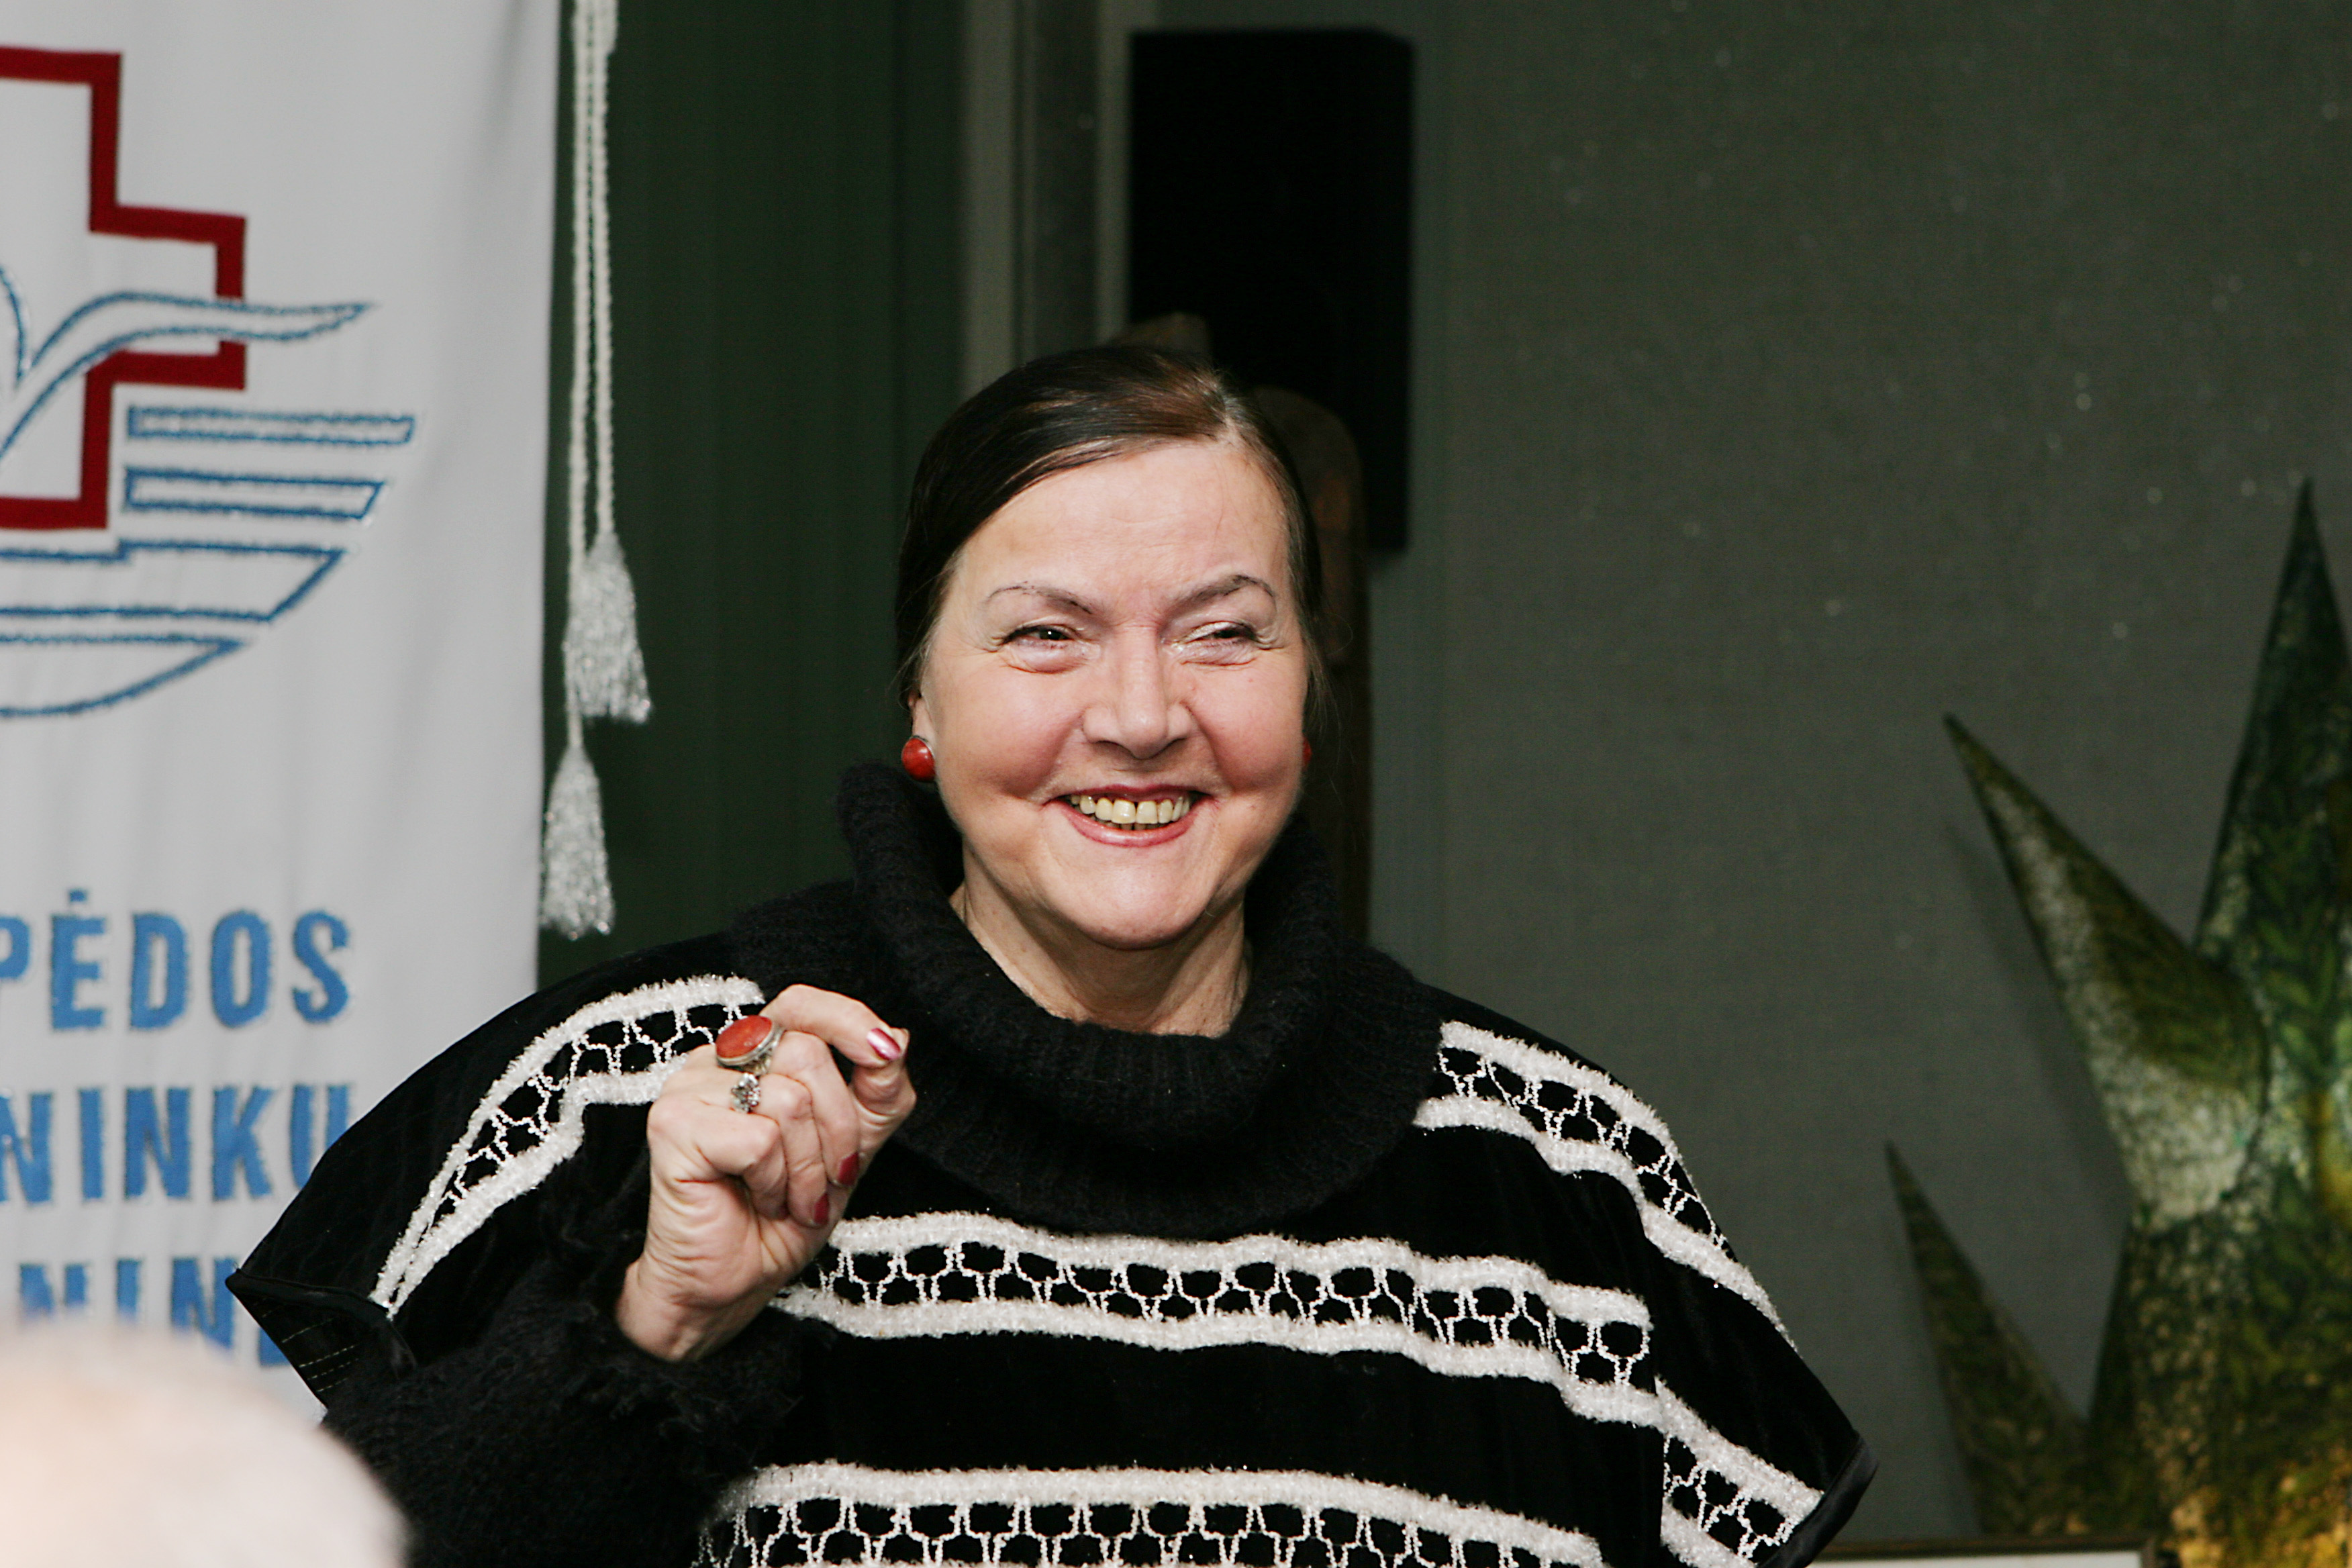 Sofija Kanaverskytė